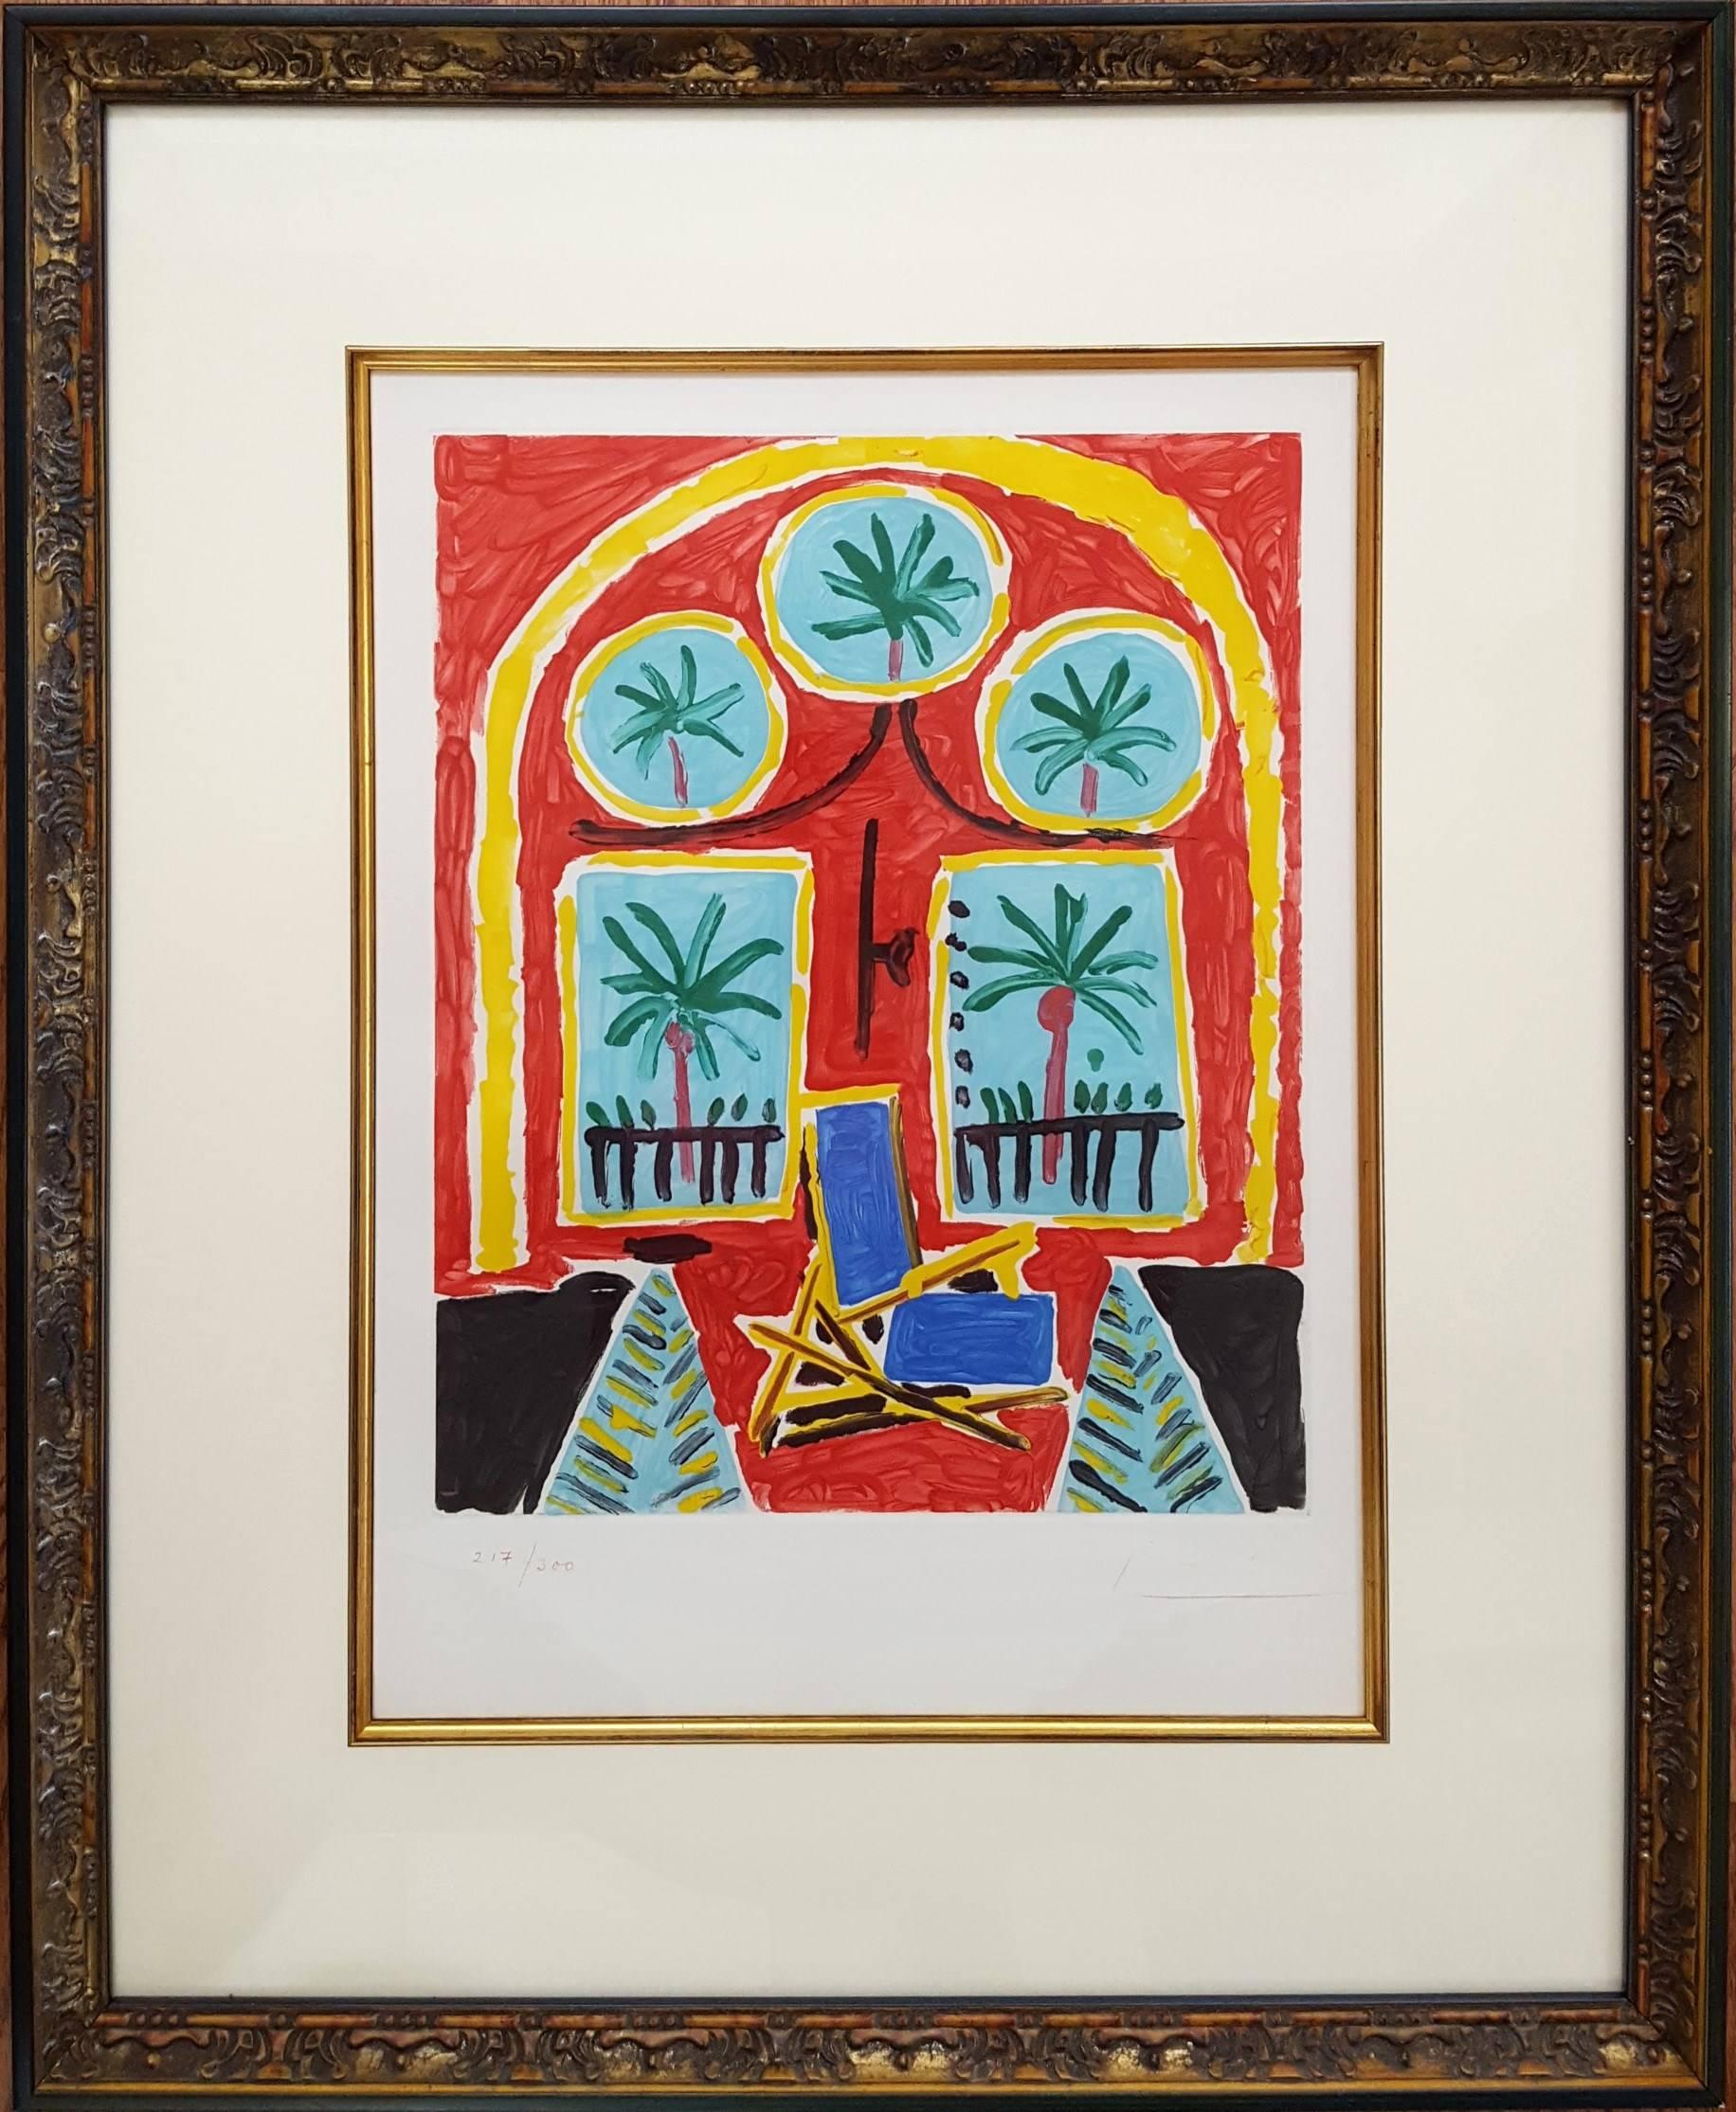 La Fenetre de L'atelier a la Californie (The Window Of The Studio La Californie) - Print by (after) Pablo Picasso